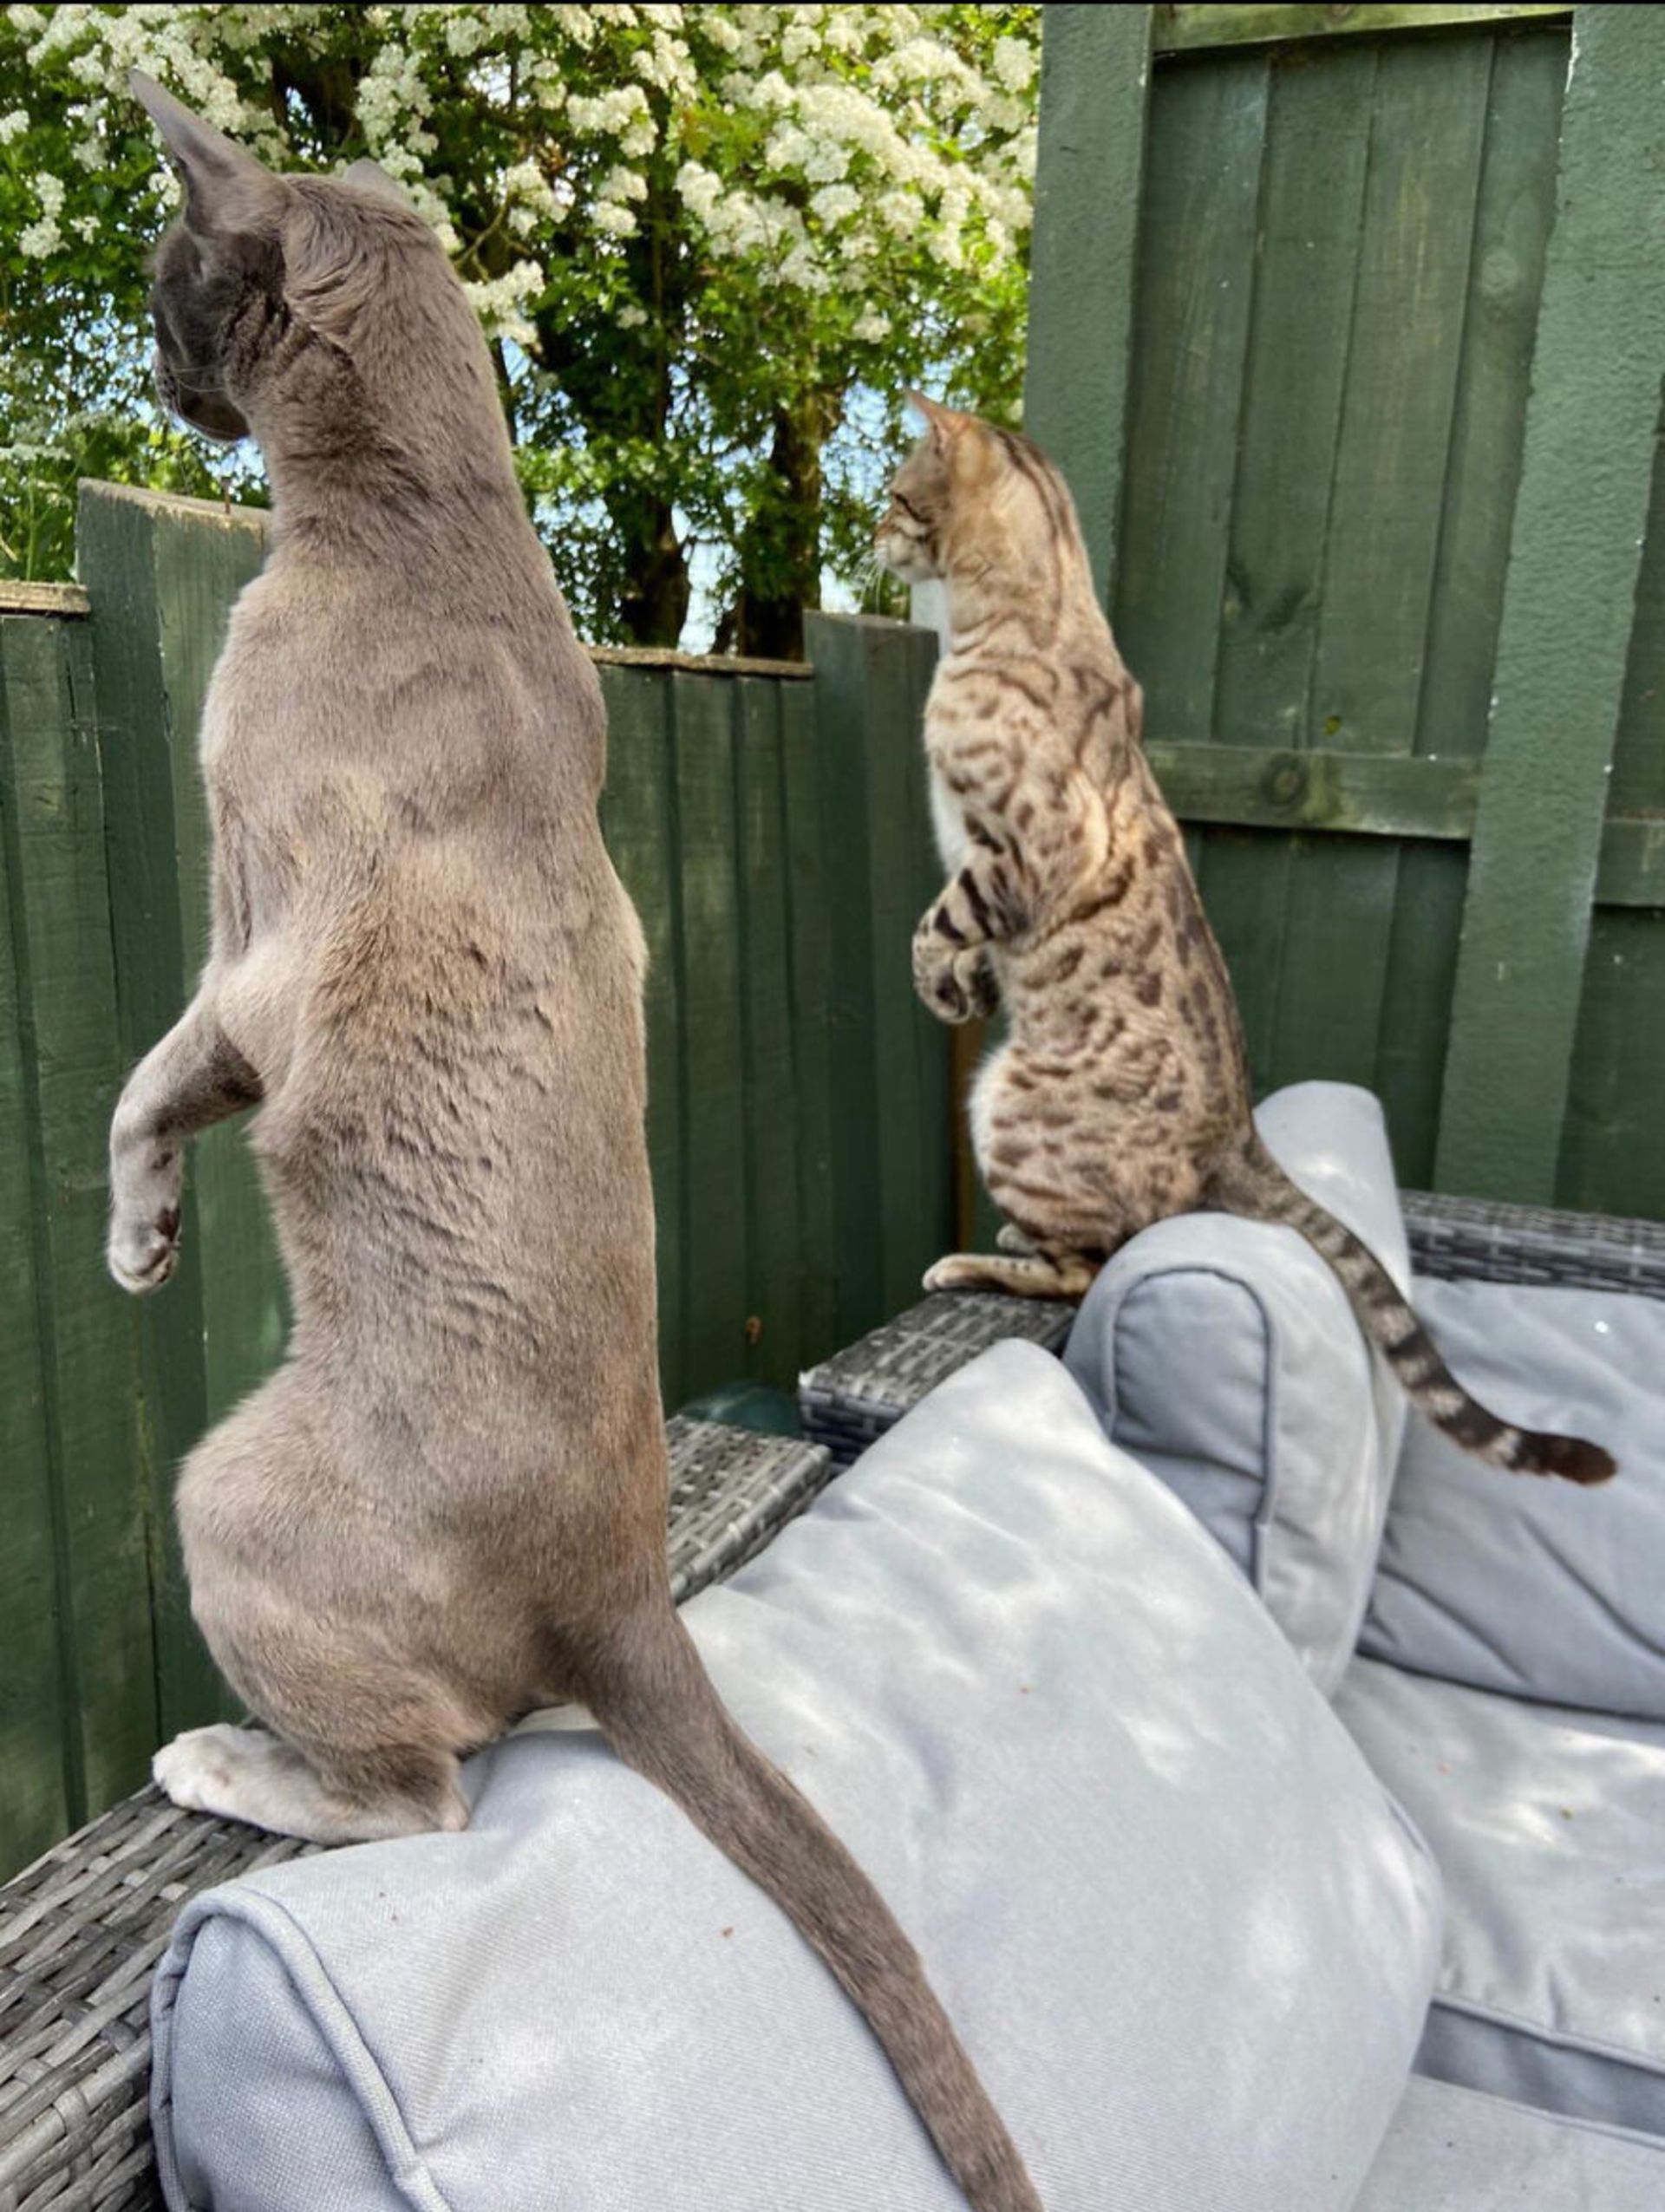 دو گربه استاده روی پاهای پشتی و خیره به همسایه